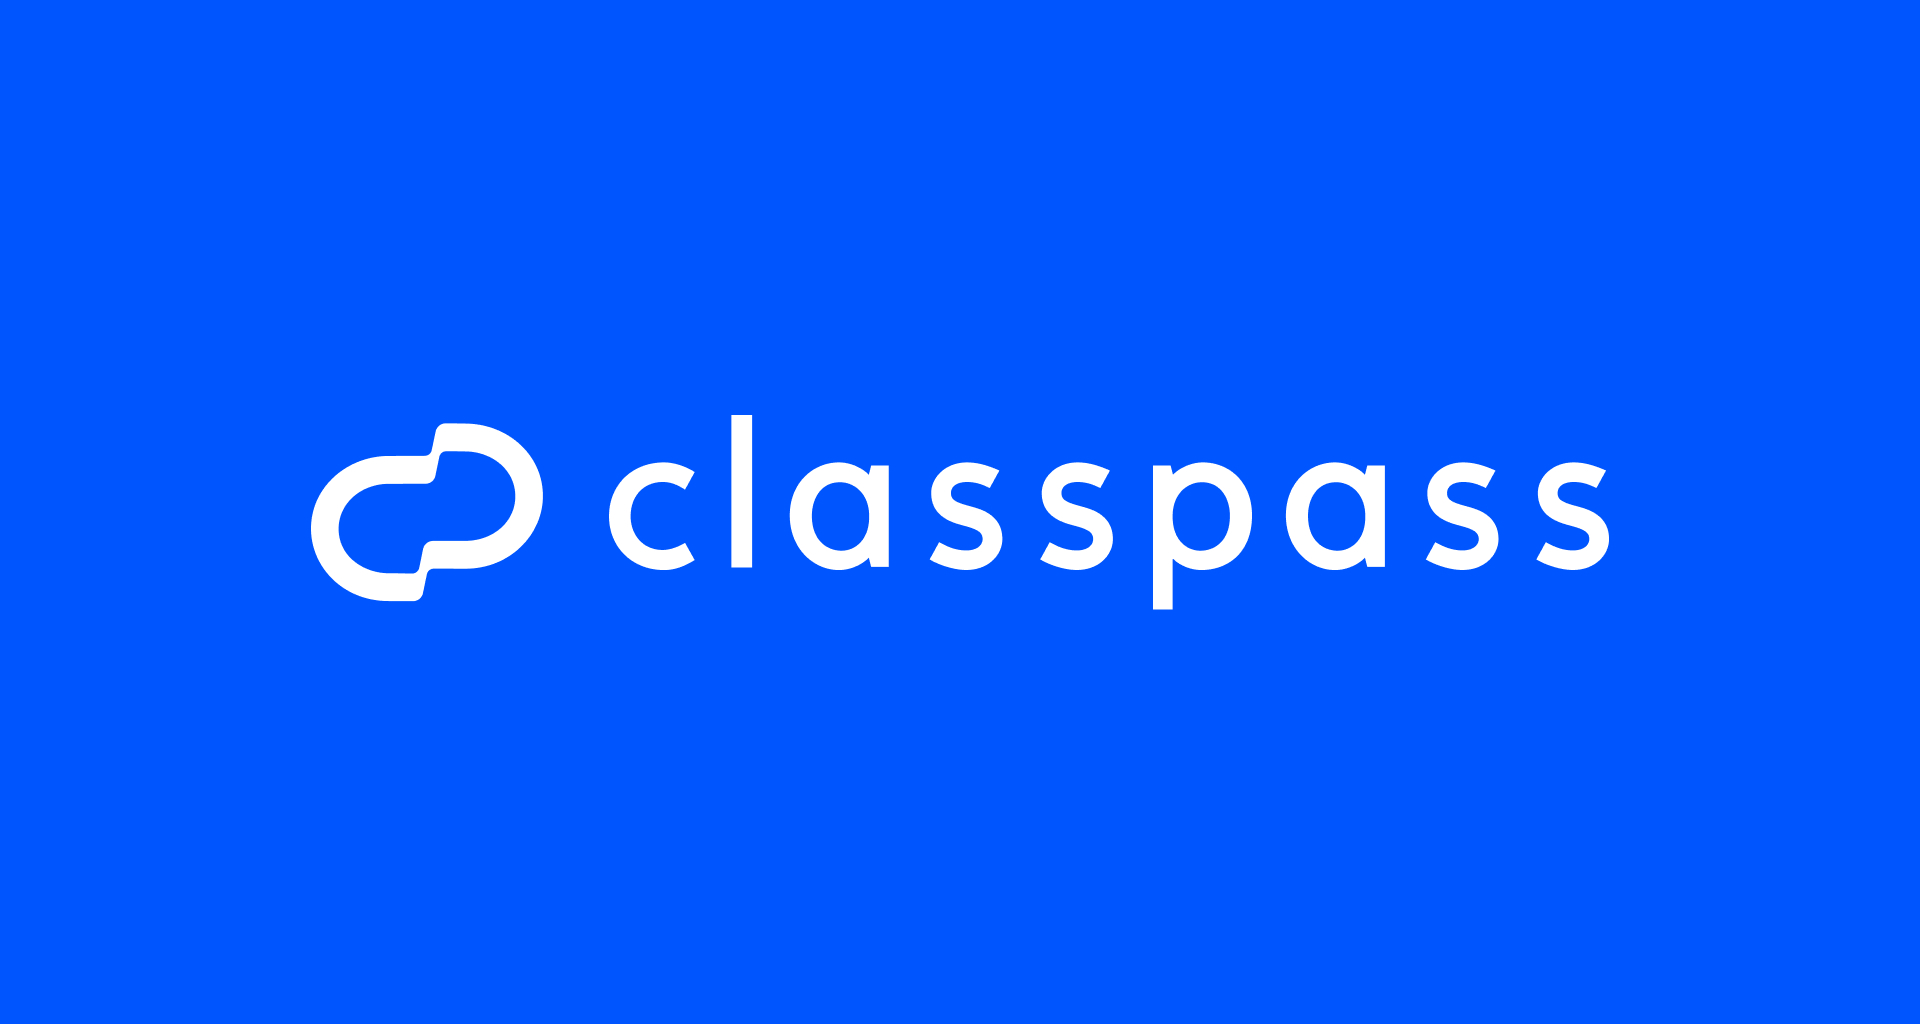 ClassPass logo